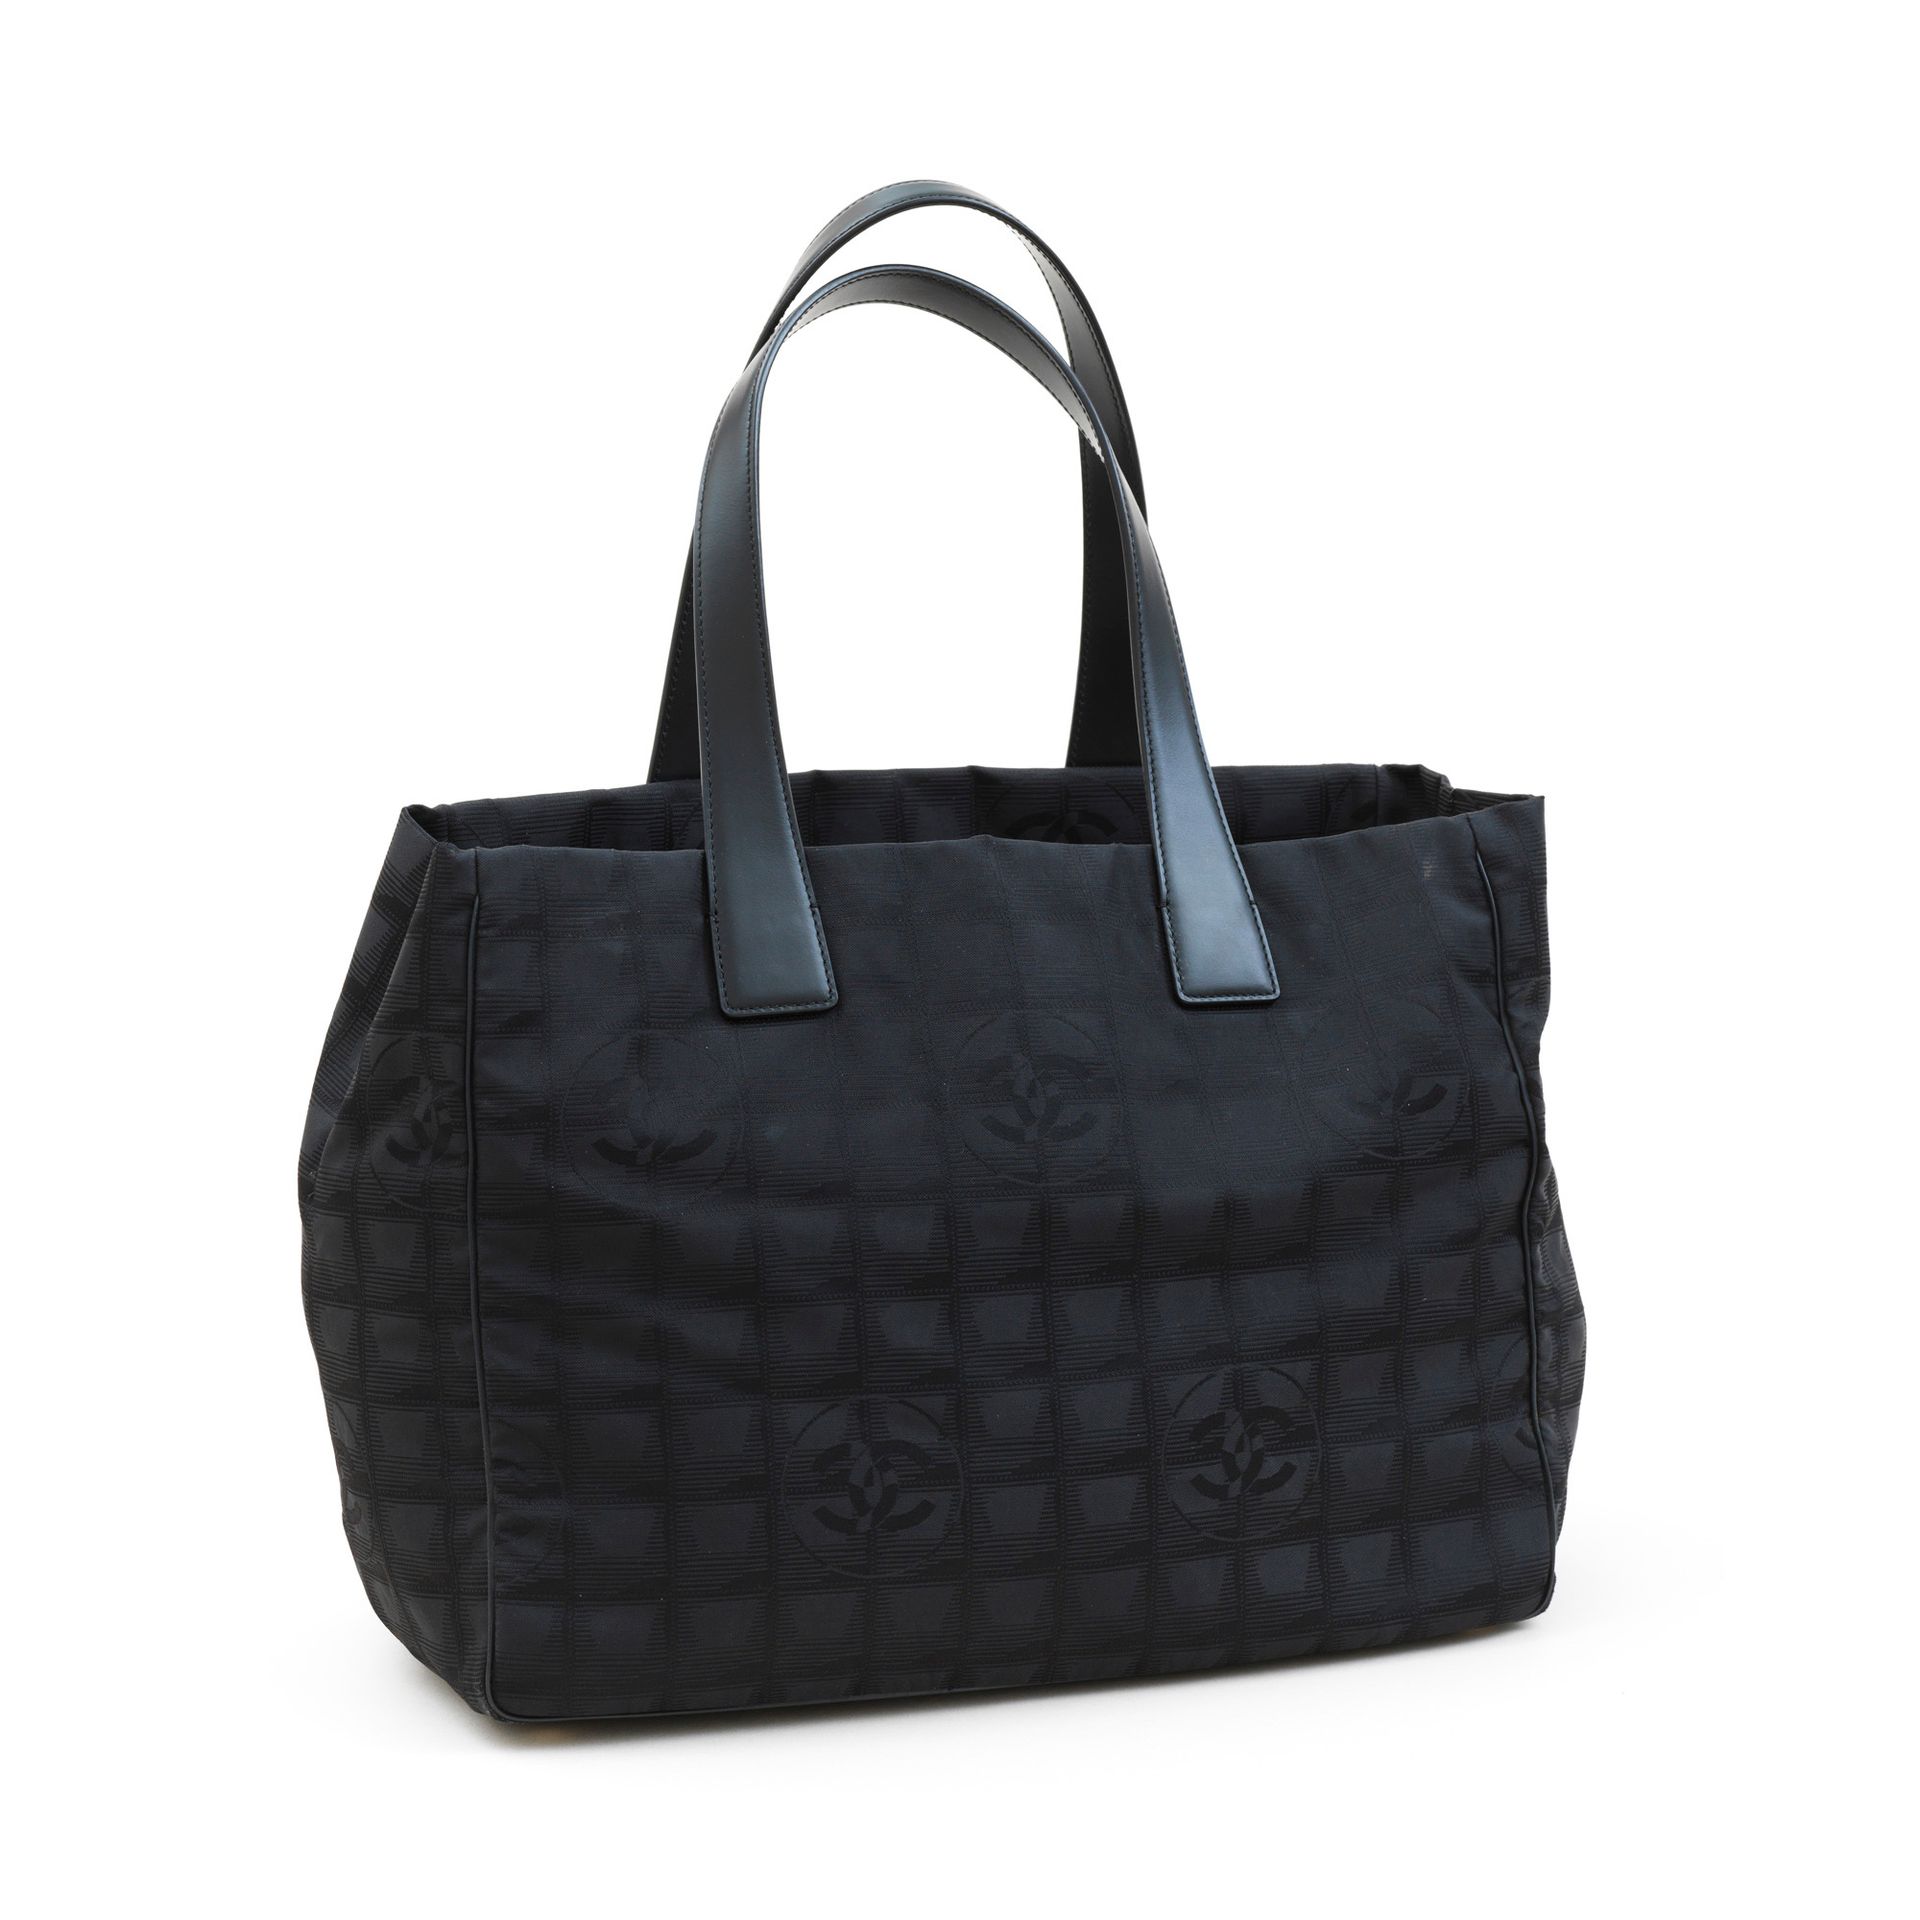 Chanel CHANEL - Bolsa de compras en nylon negro adamascado con el acolchado y el&hellip;